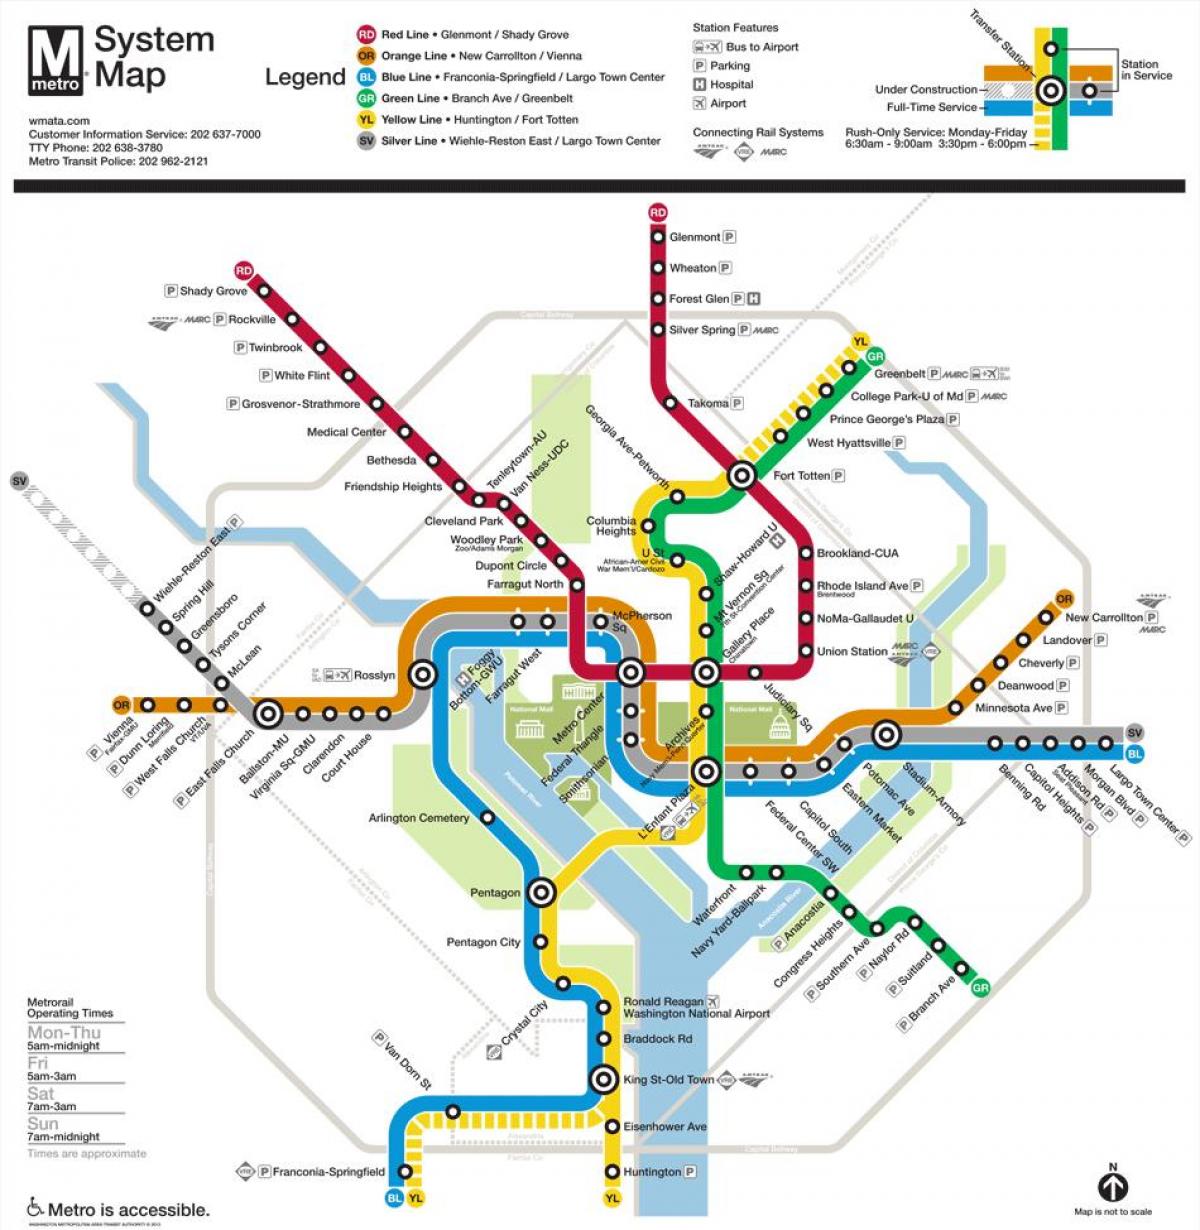 dc метро мапата до 2015